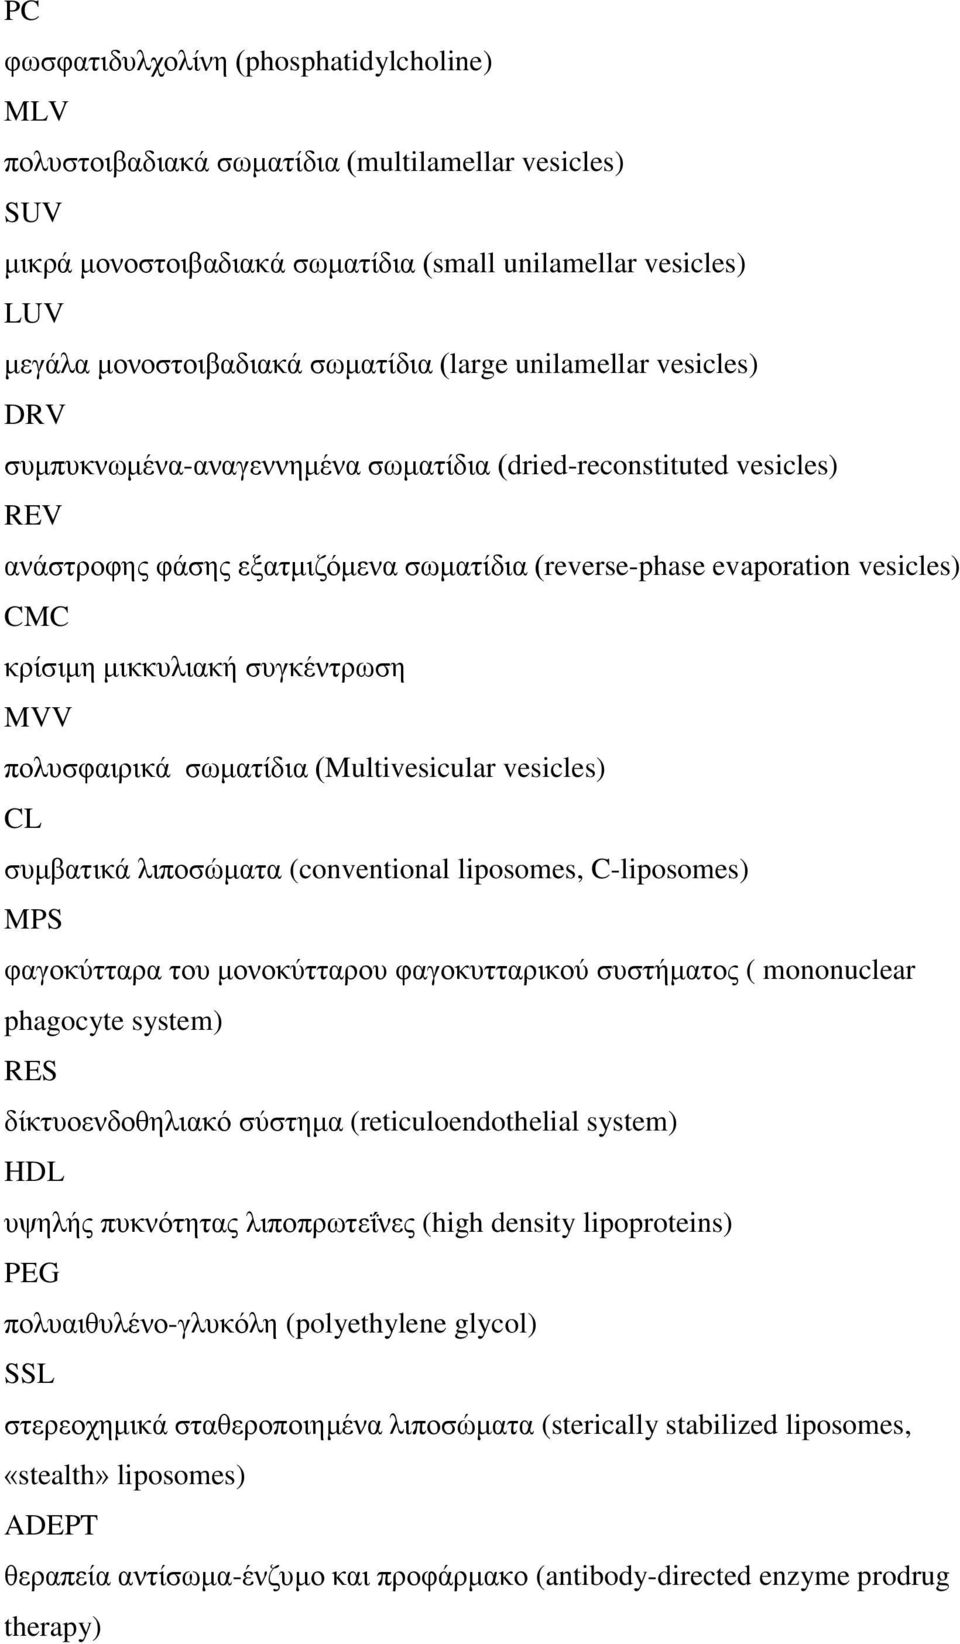 κηθθπιηαθή ζπγθέληξσζε MVV πνιπζθαηξηθά ζσκαηίδηα (Multivesicular vesicles) CL ζπκβαηηθά ιηπνζώκαηα (conventional liposomes, C-liposomes) MPS θαγνθύηηαξα ηνπ κνλνθύηηαξνπ θαγνθπηηαξηθνύ ζπζηήκαηνο (